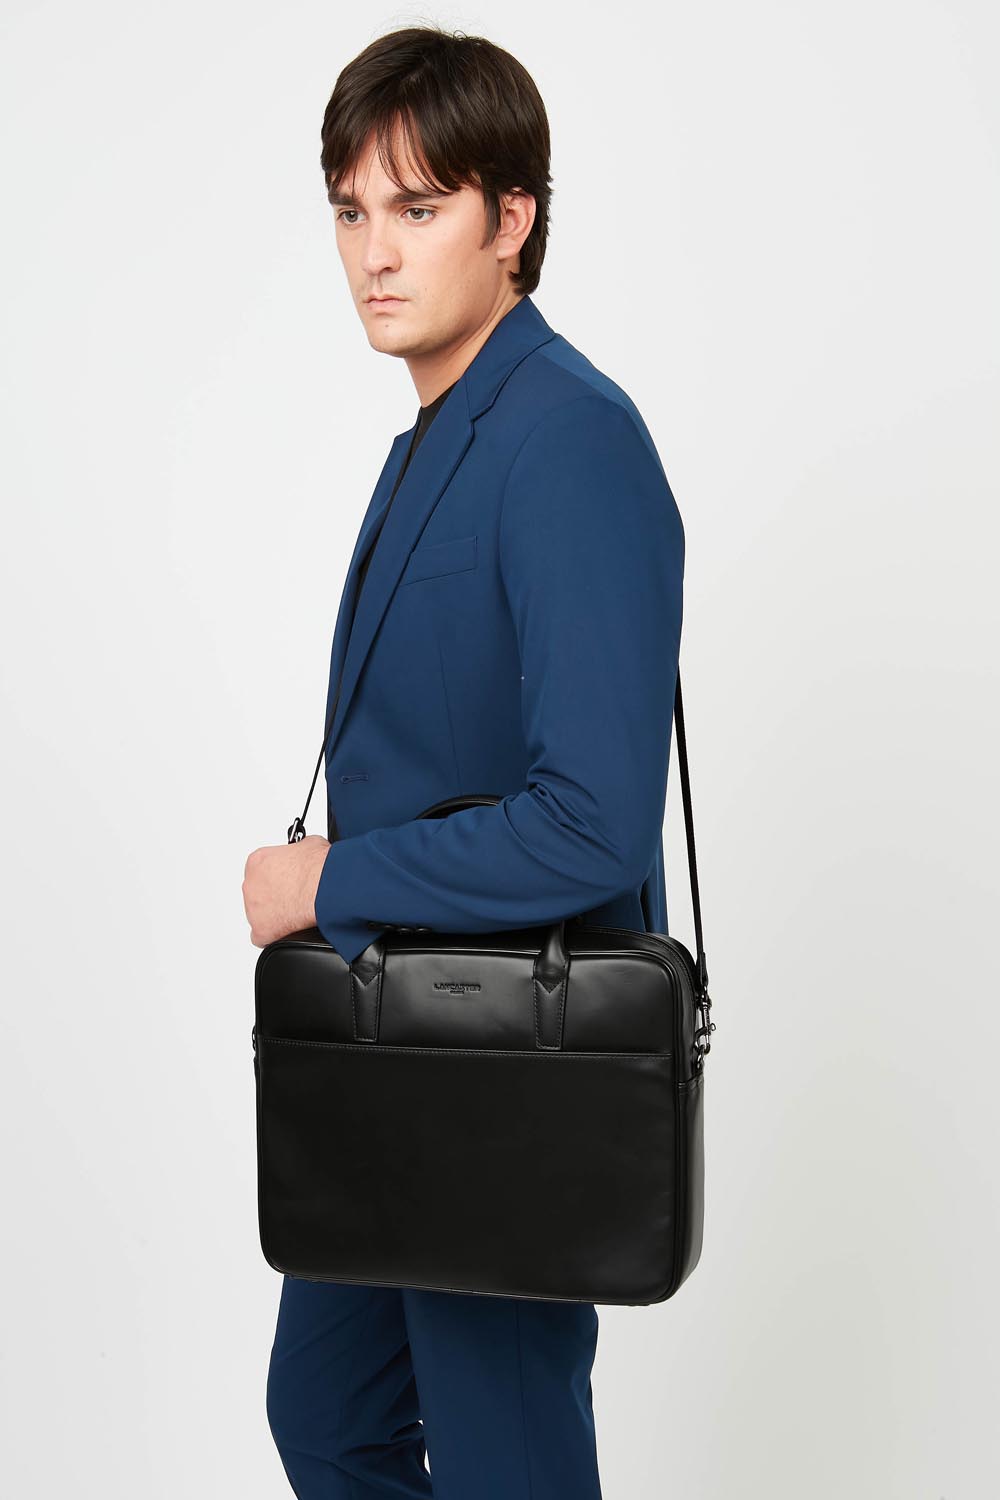 portfolio document holder bag - capital #couleur_noir